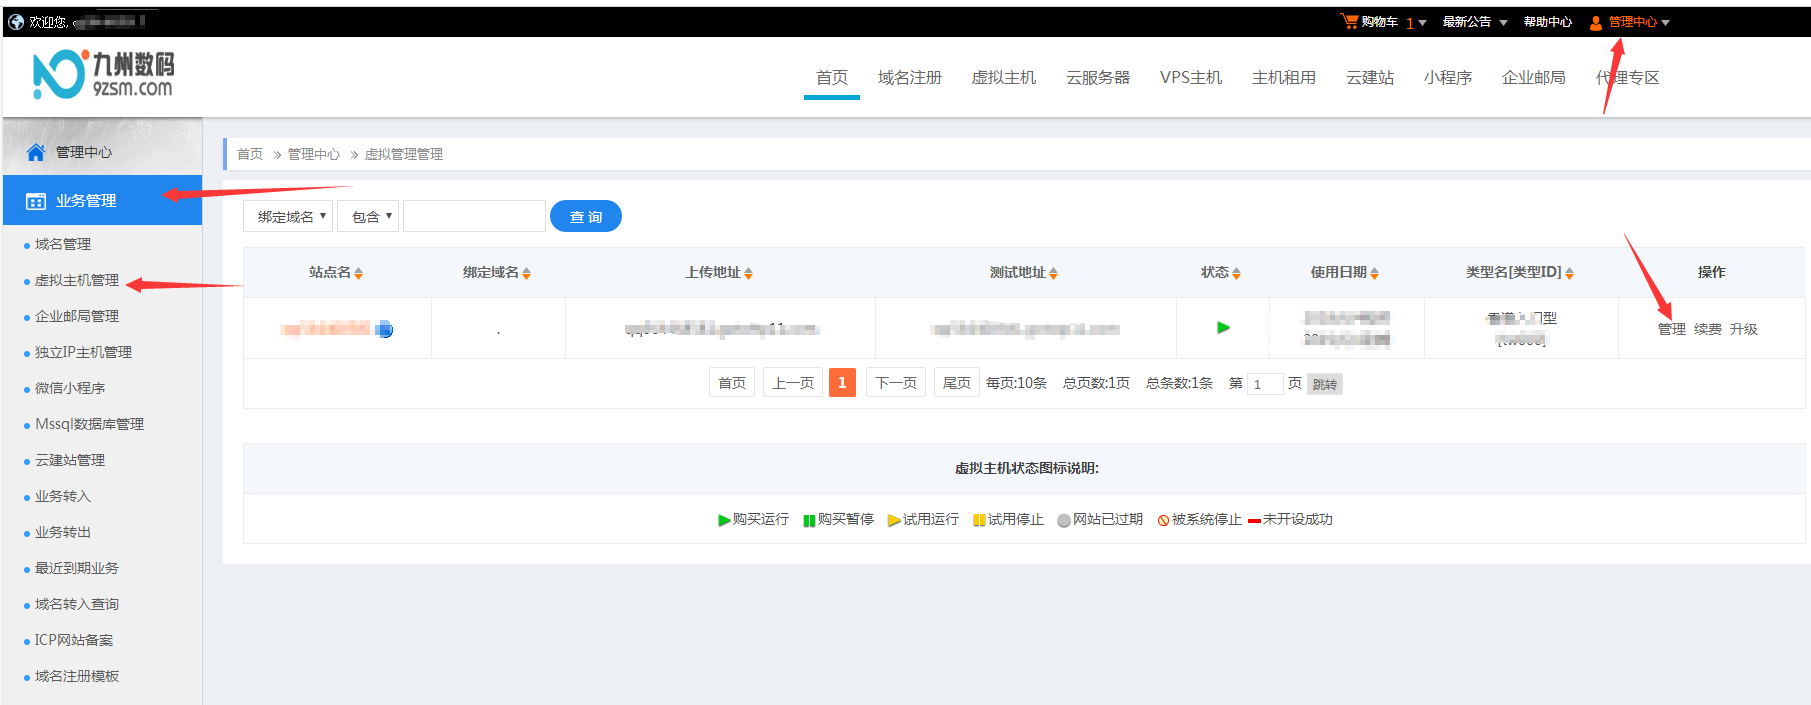 大淘客 CMS 网站访问频繁出现 500 错误问题修复教程 -九州数码